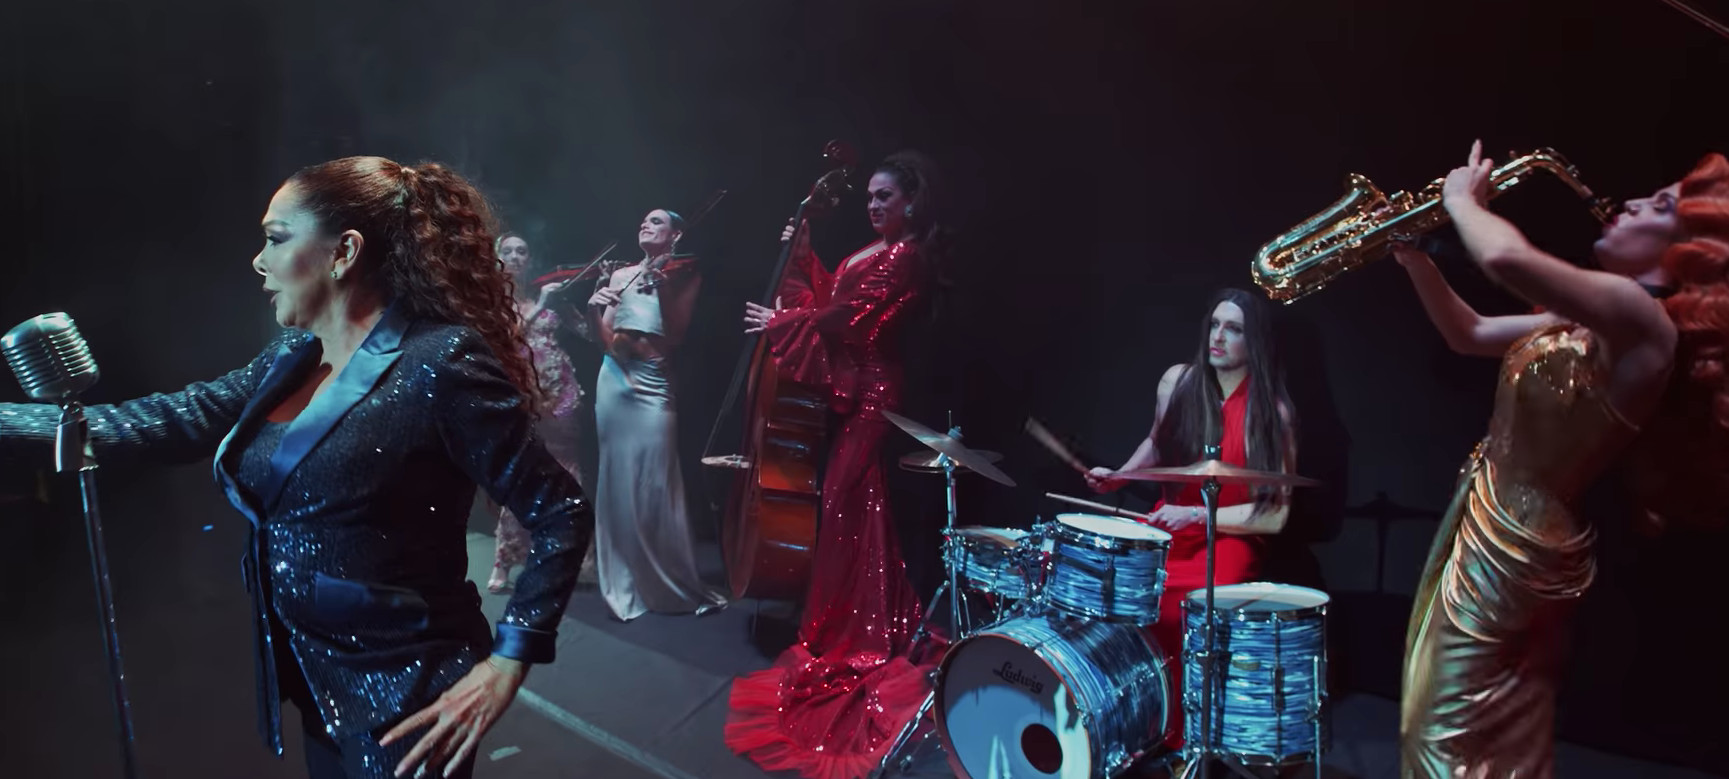 Isabel Pantoja en el videoclip de 'Enamórate' junto con un grupo de ocho drag queens / ISABEL PANTOJA OFICIAL